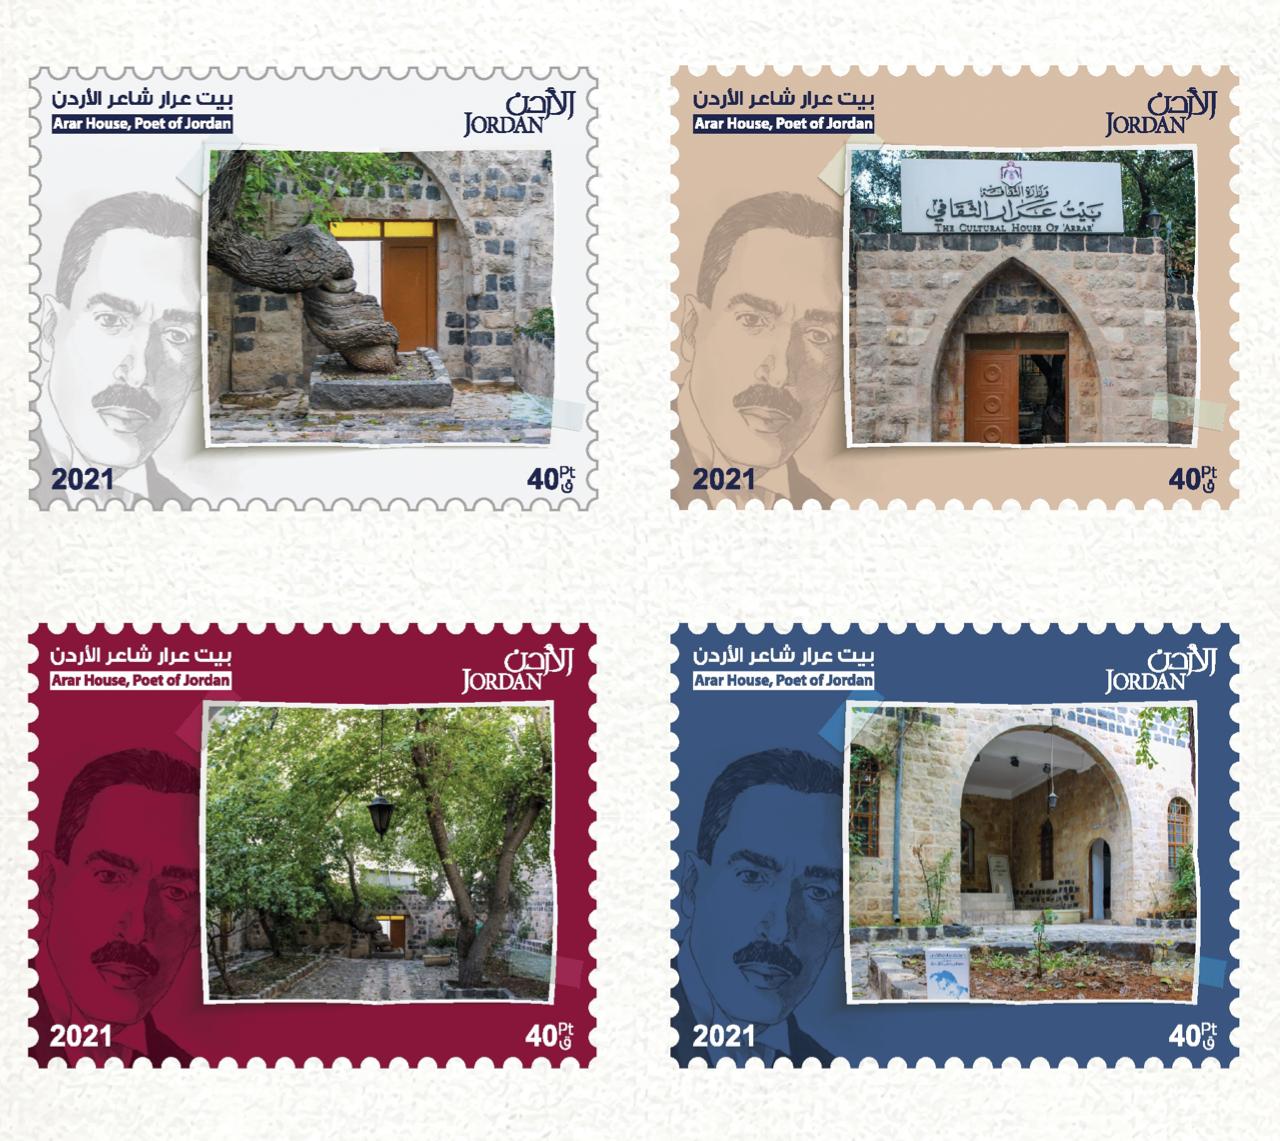 البريد الاردني يطرح إصدارا جديدا من الطوابع بعنوان بيت عرار